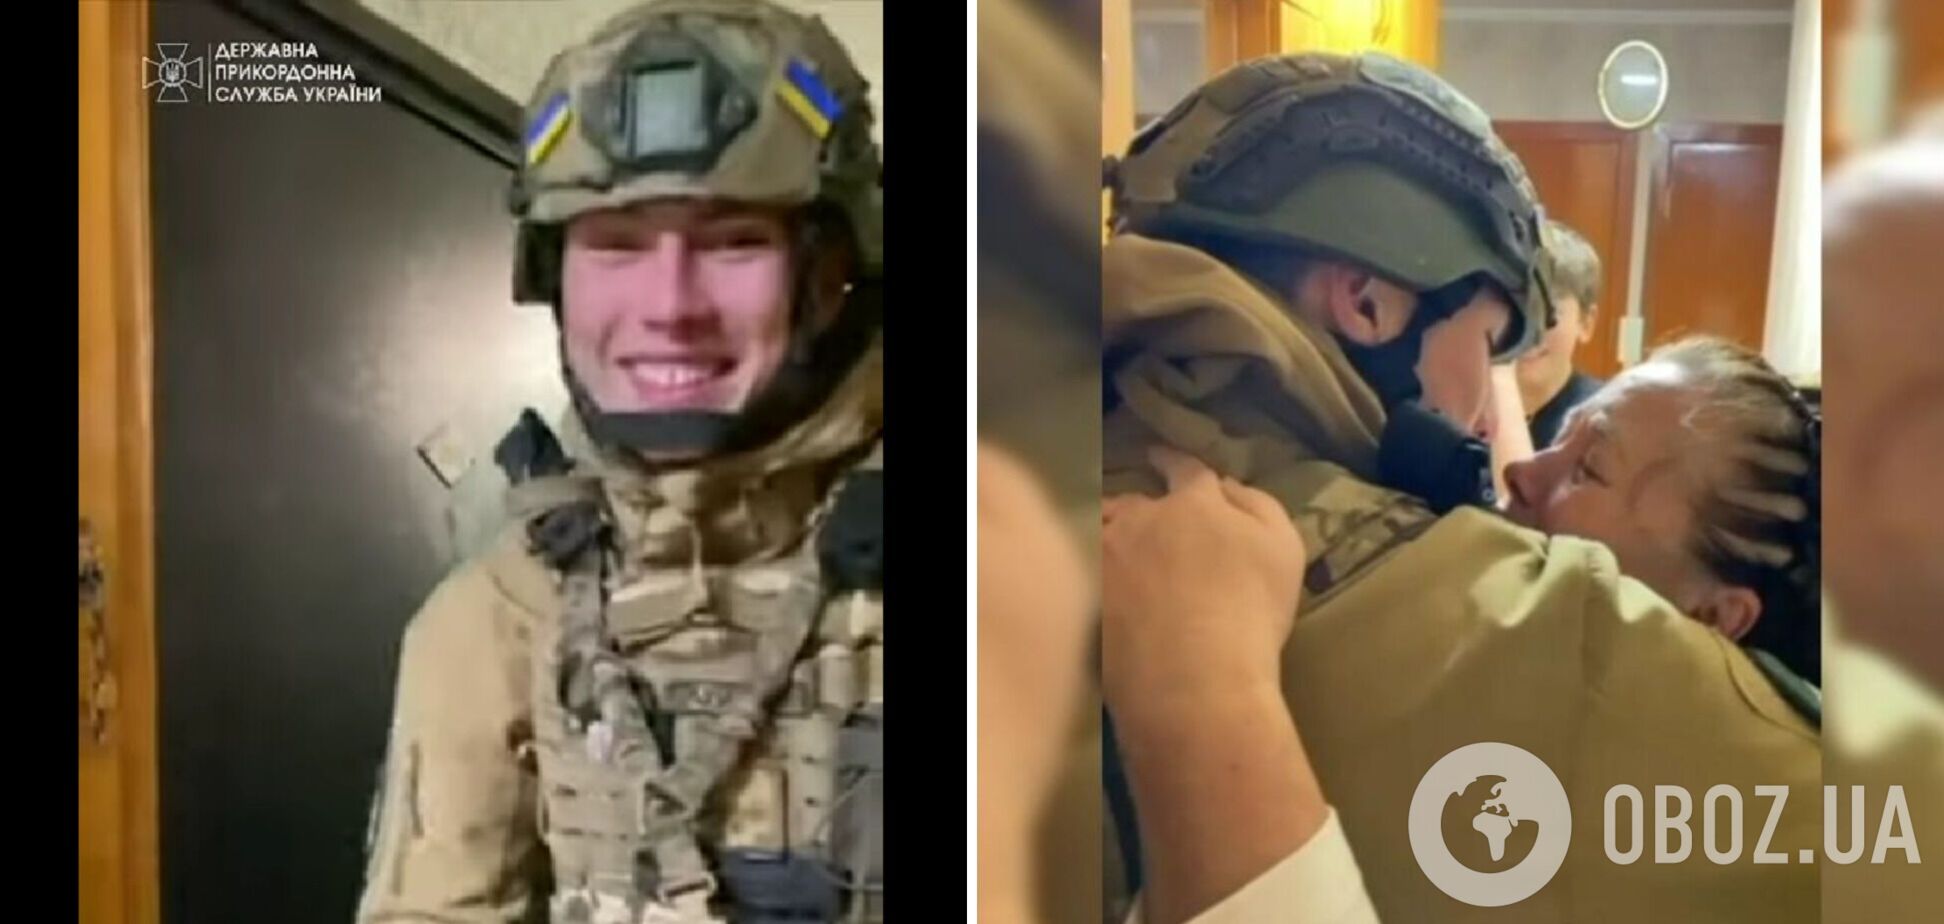 Посмотрите на эту улыбку: появилось милое видео с вернувшимся домой защитником Украины